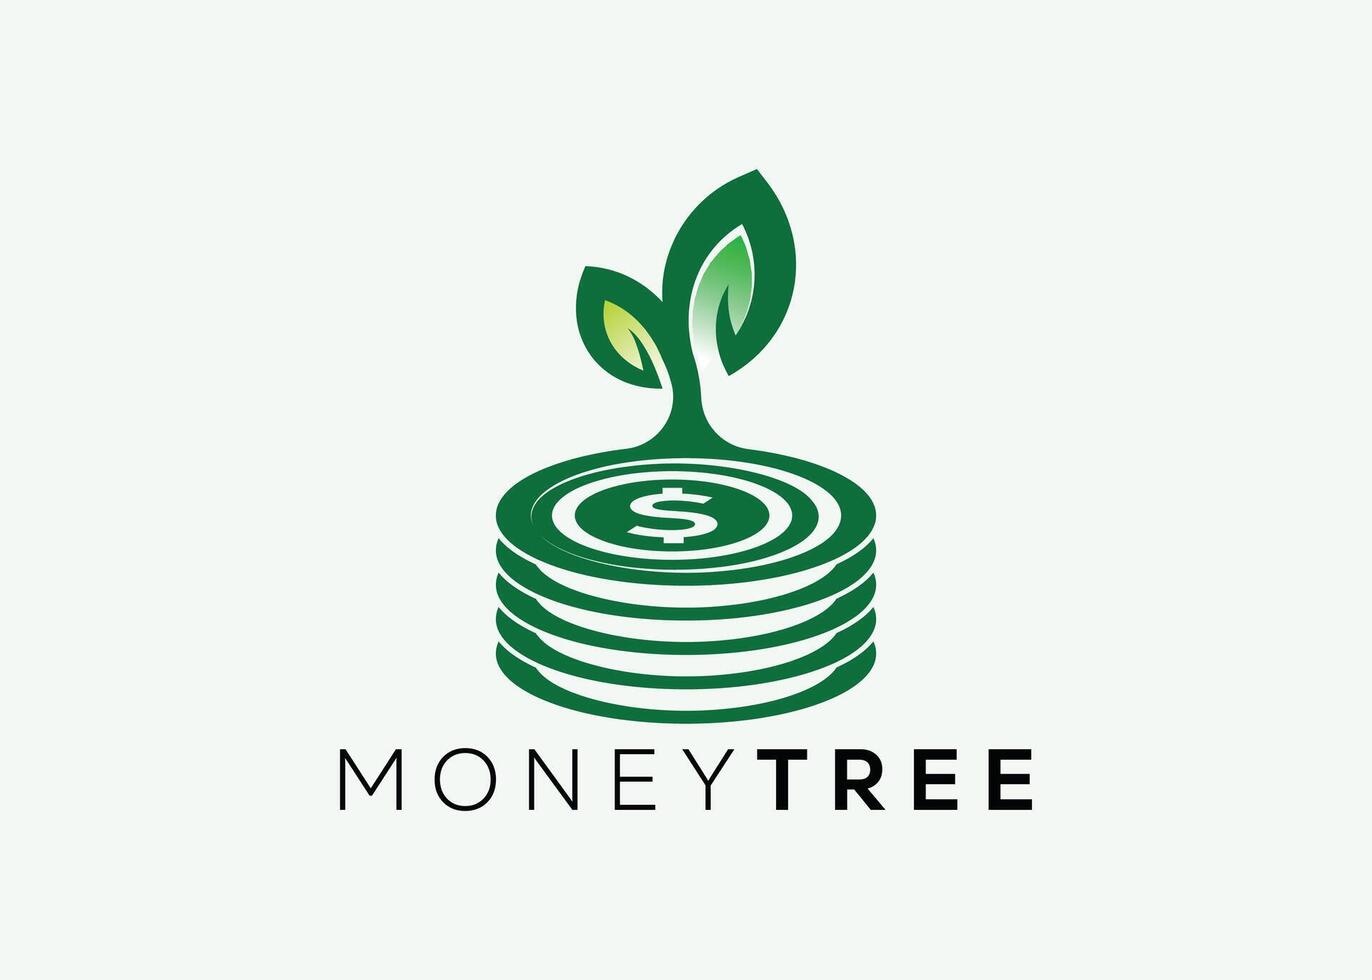 minimalista dinheiro árvore logotipo Projeto vetor modelo. dinheiro crescer investimento para o negócio finança logotipo. dinheiro investimento logotipo